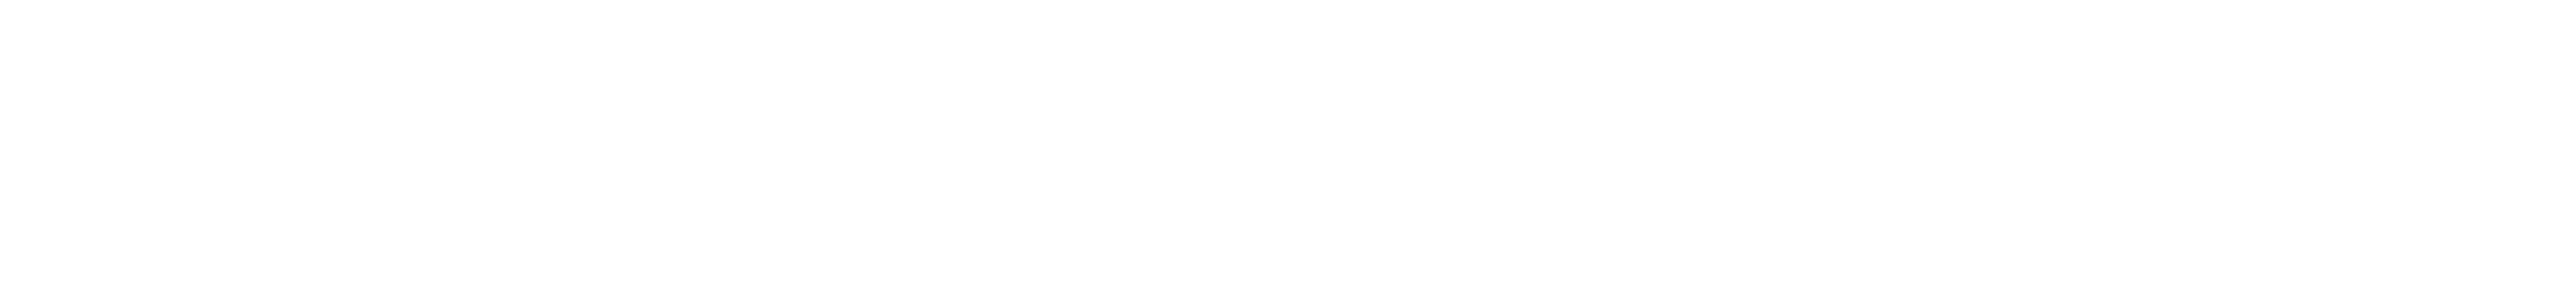 farrer kane & co logo